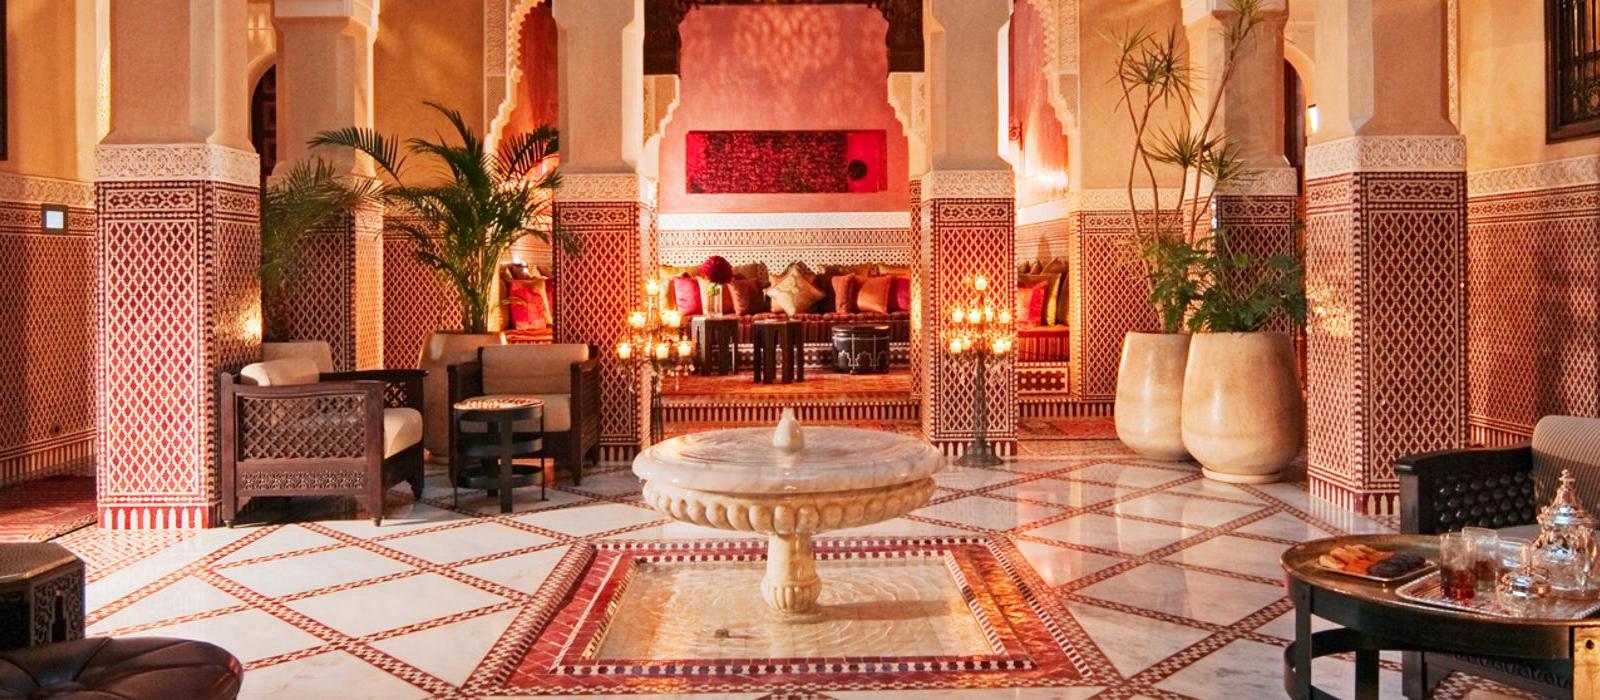 马拉喀什皇家曼苏尔酒店(Royal Mansour Marrakech) 图片  www.lhw.cn